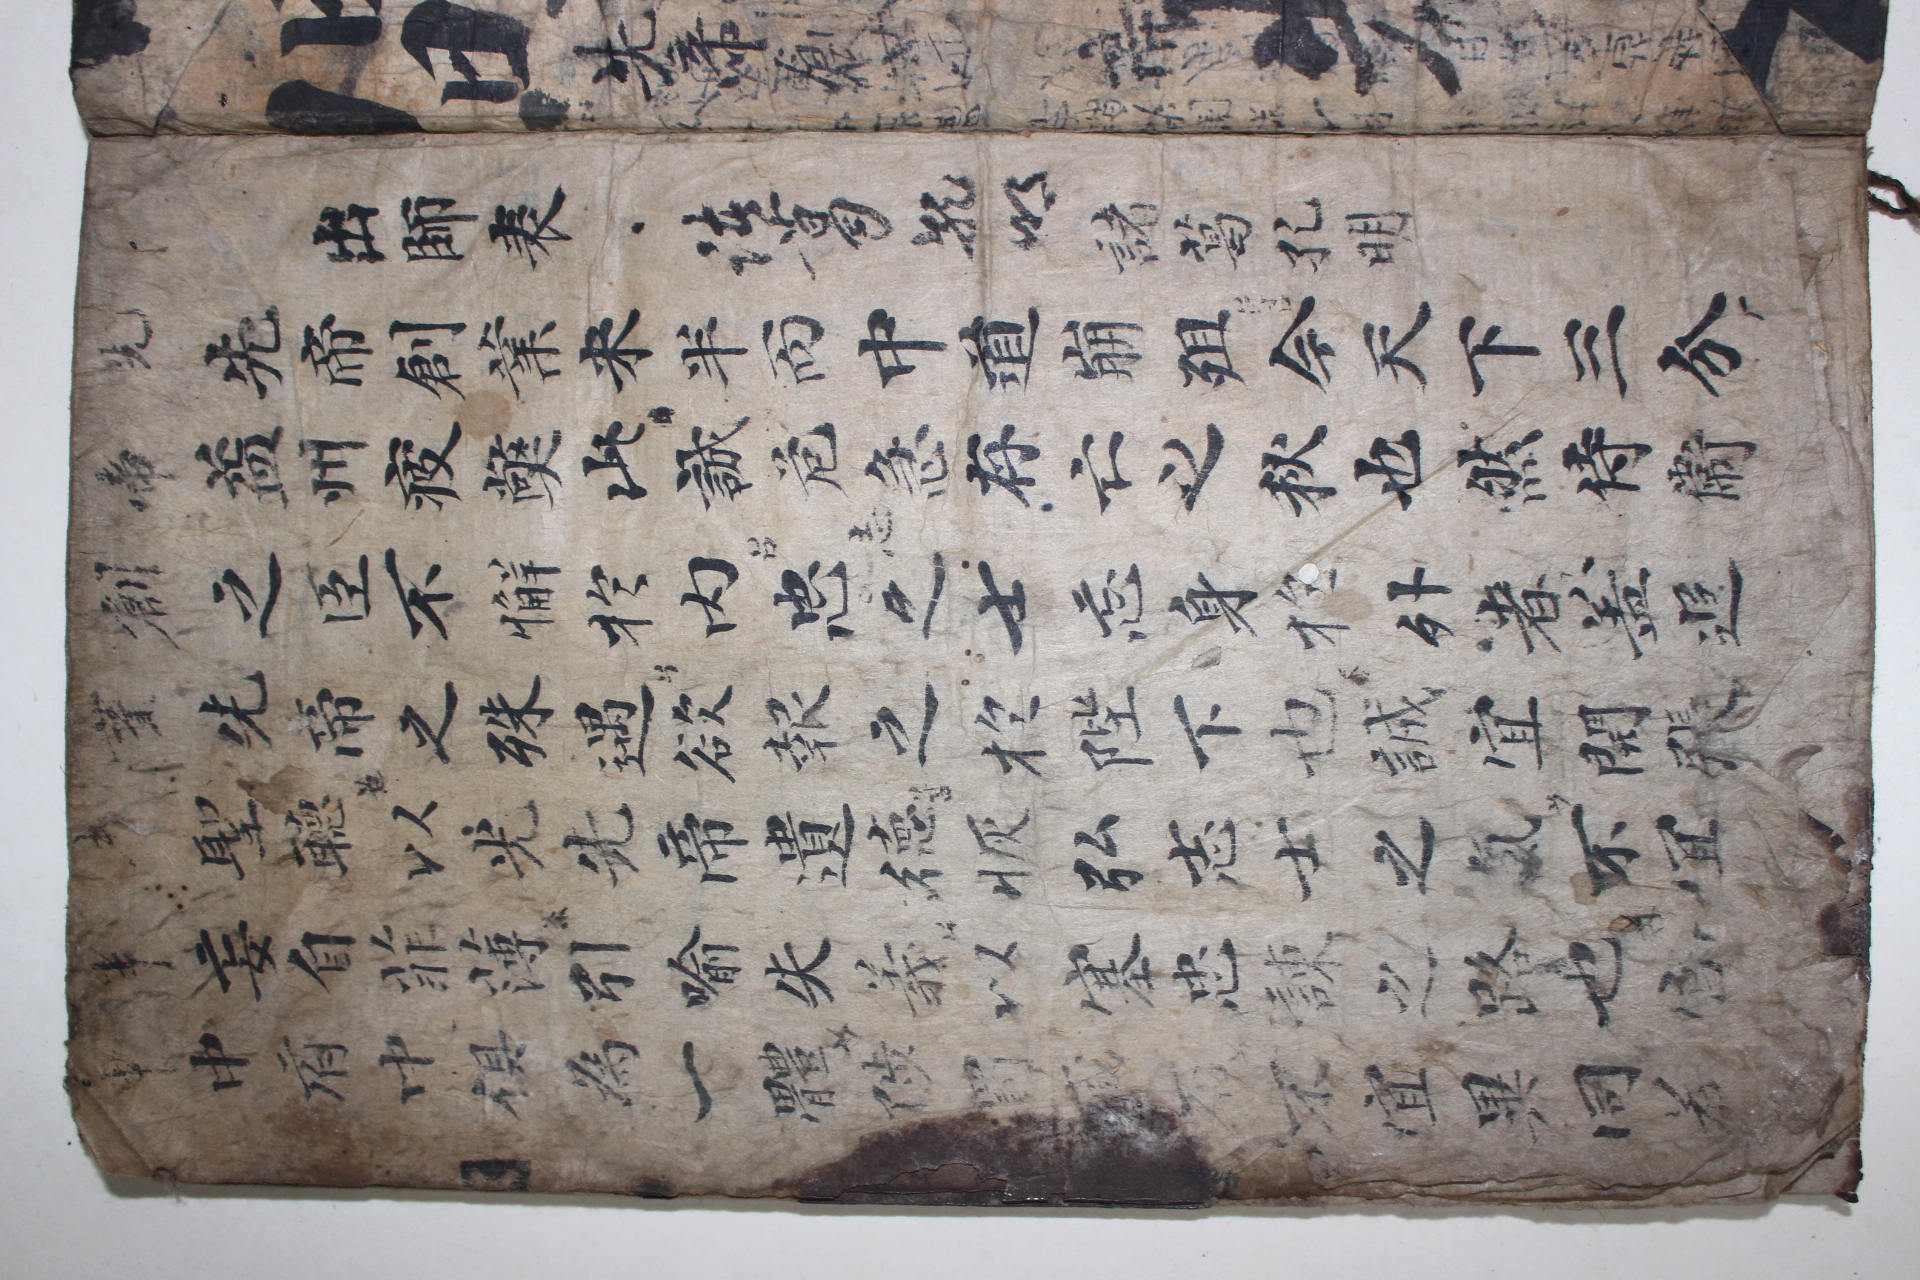 조선시대 고필사본 출사표(出師表)